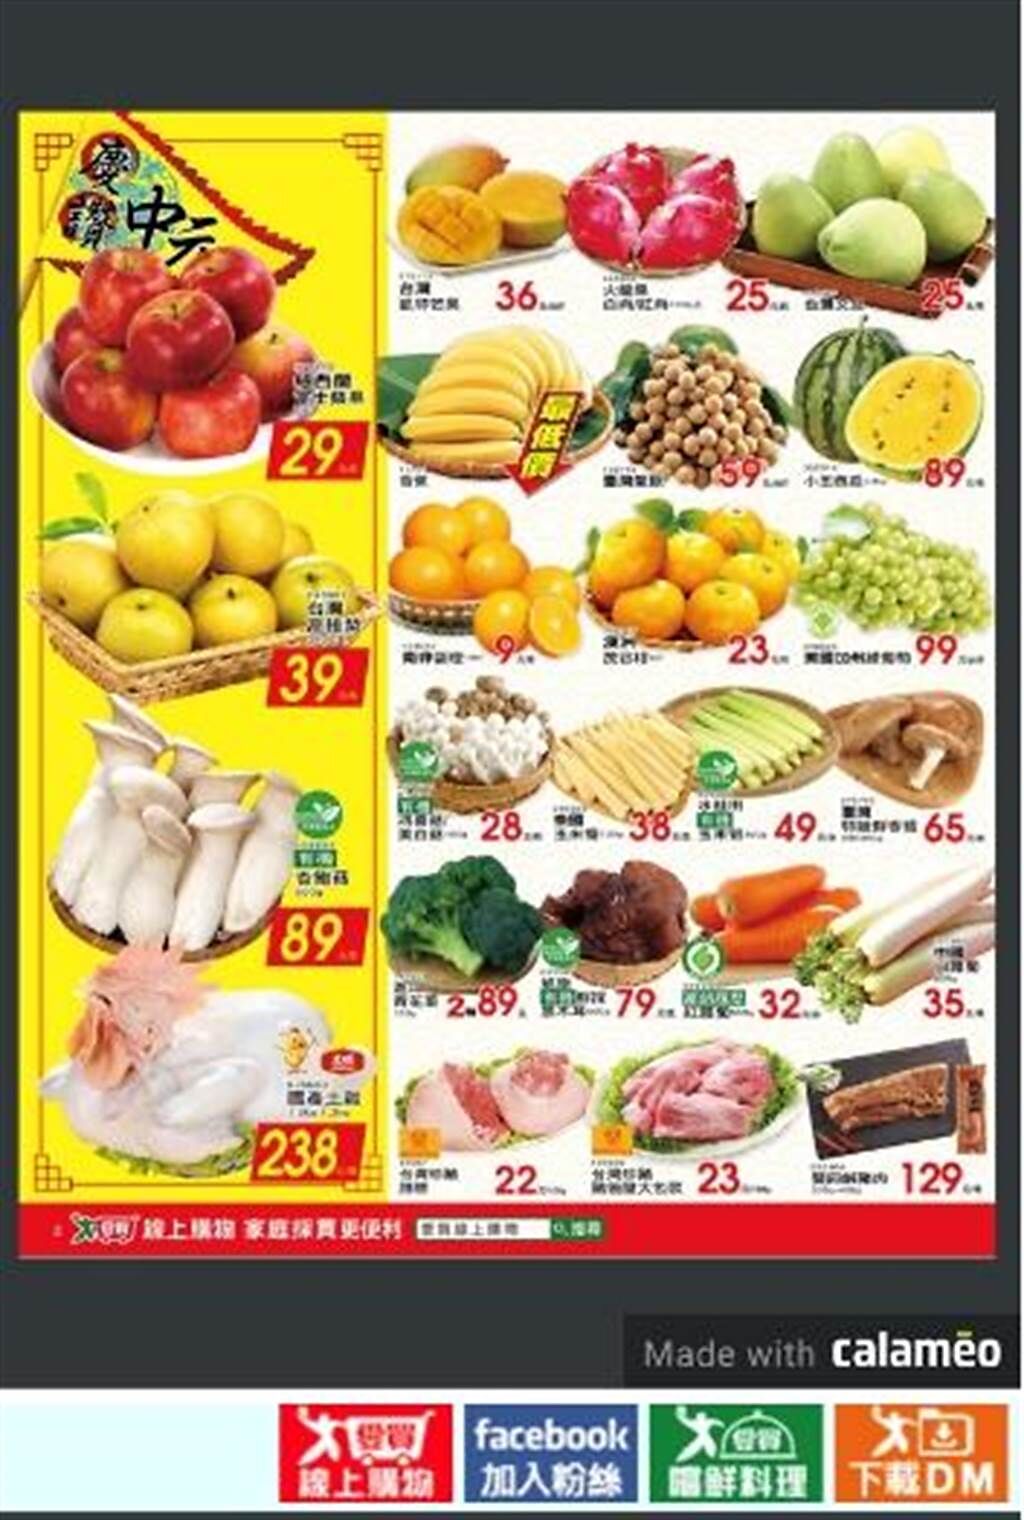 愛買價格較平穩的有機葉菜和進口蔬菜，根莖類及菇類等價格較穩定，DM上蔬菜的價格不變。（愛買提供）